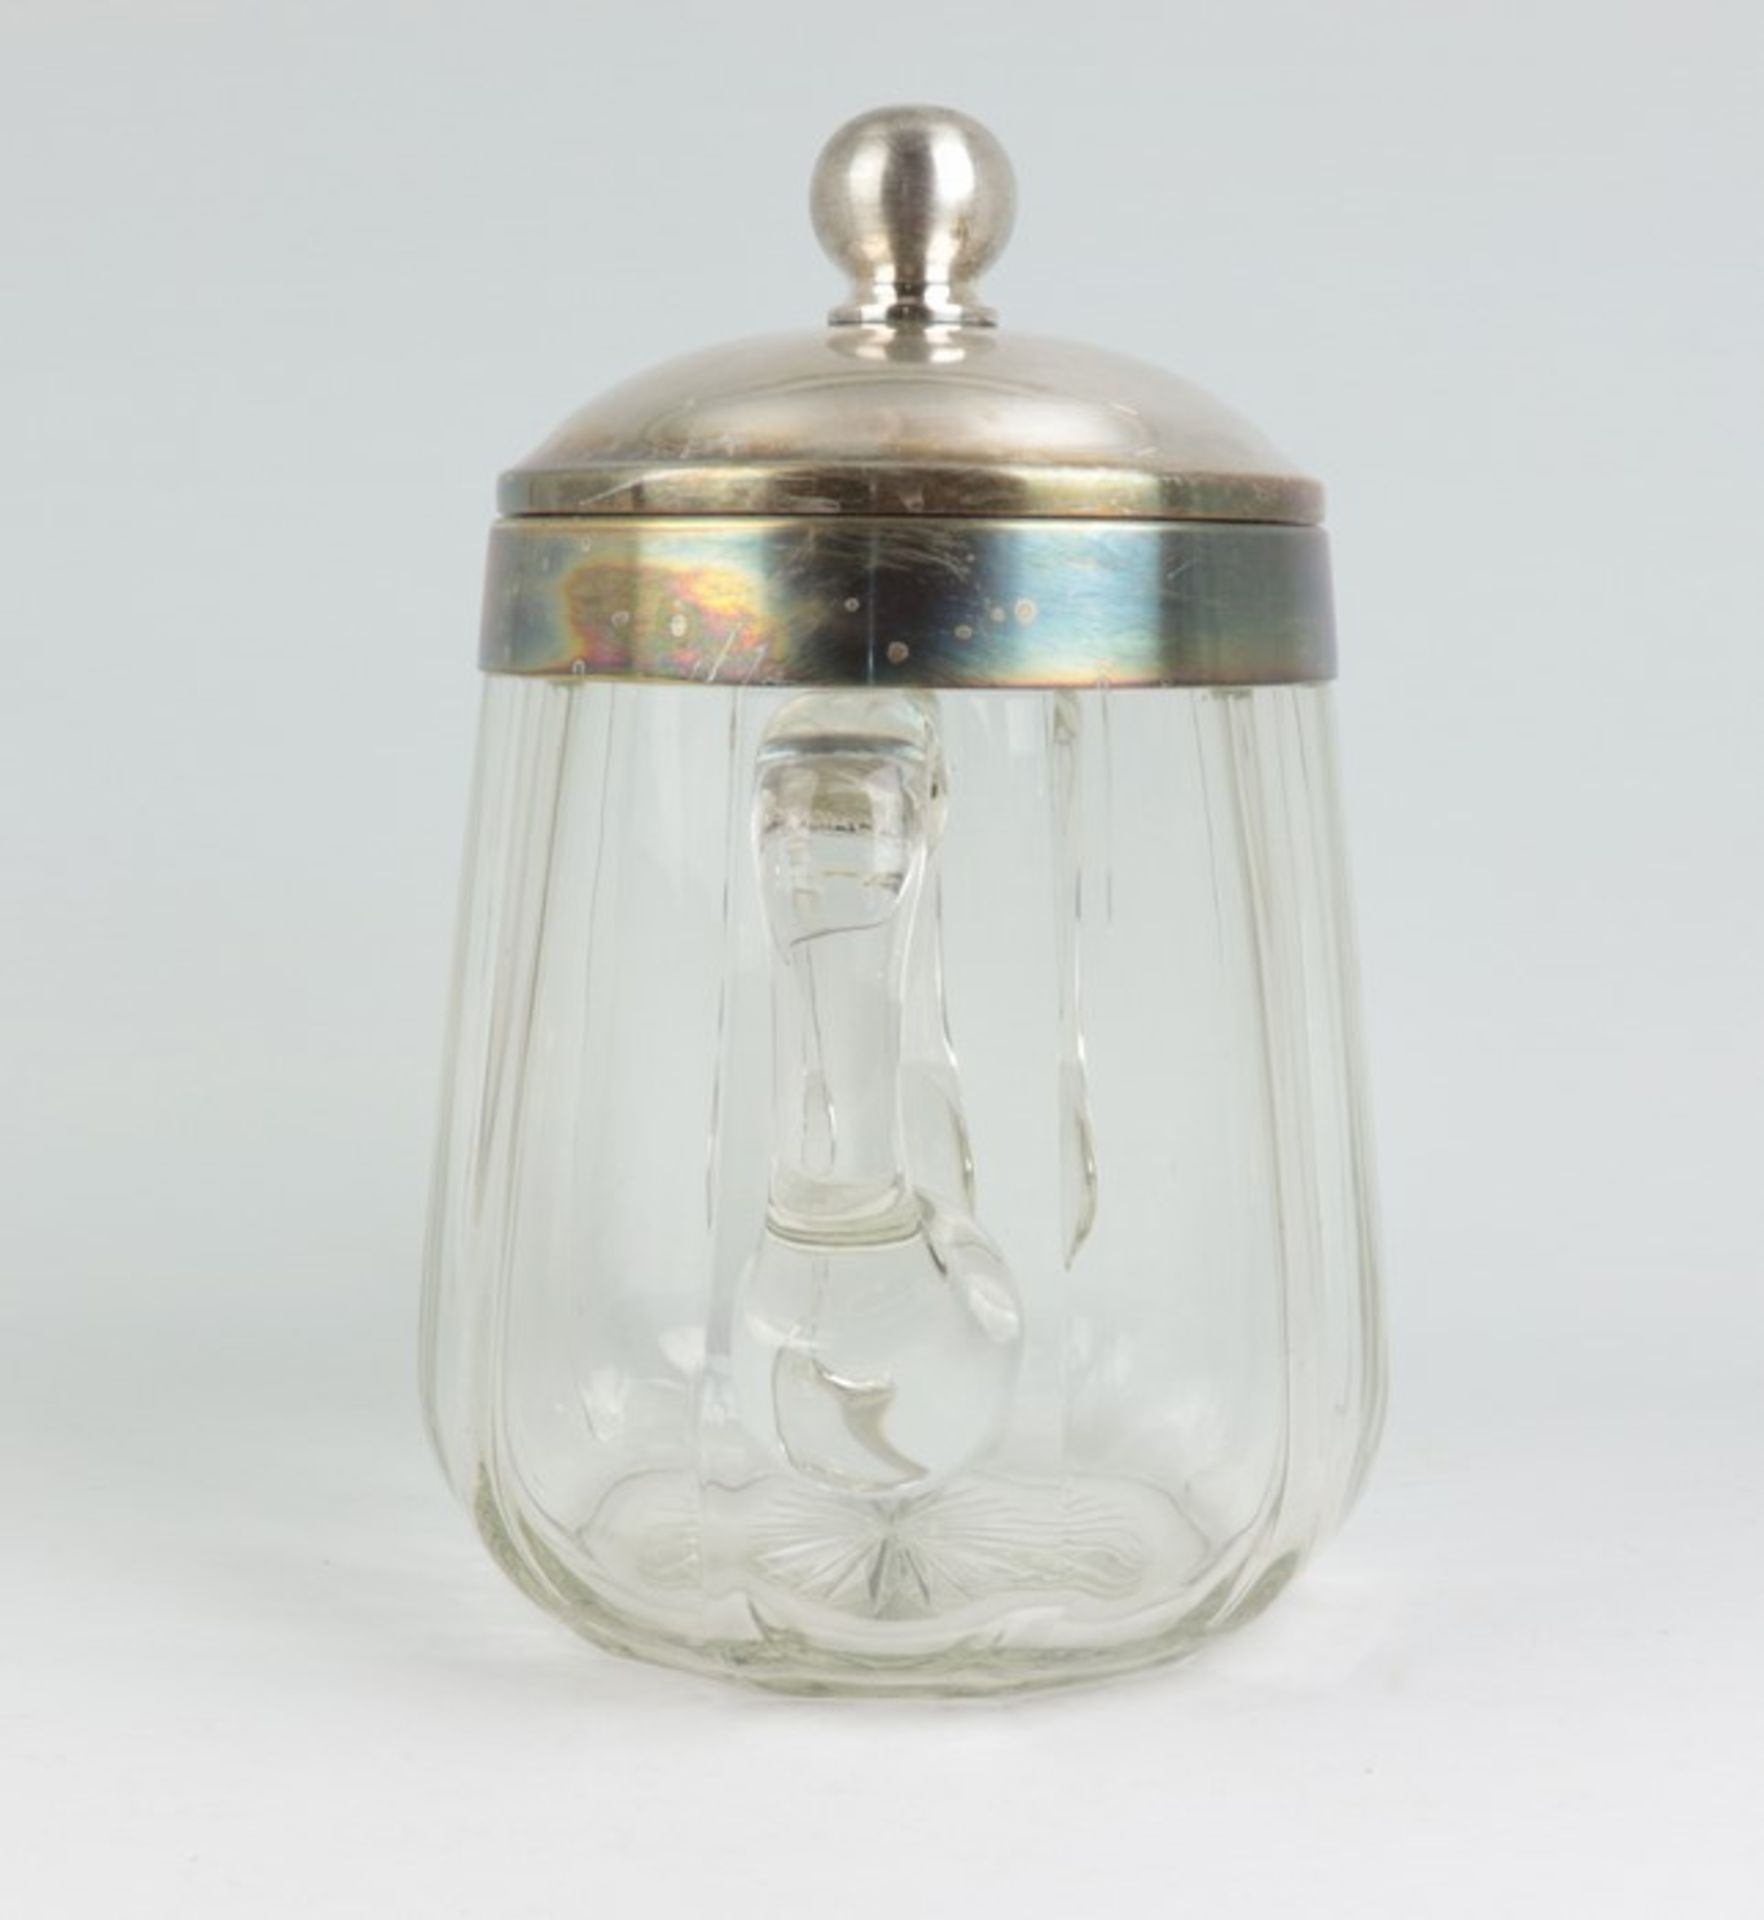 Bowlegefäßfarbloses Glas, runder Stand m. Bodenstern, konischer, leicht gebauchter Korpus, umlaufend - Bild 2 aus 3